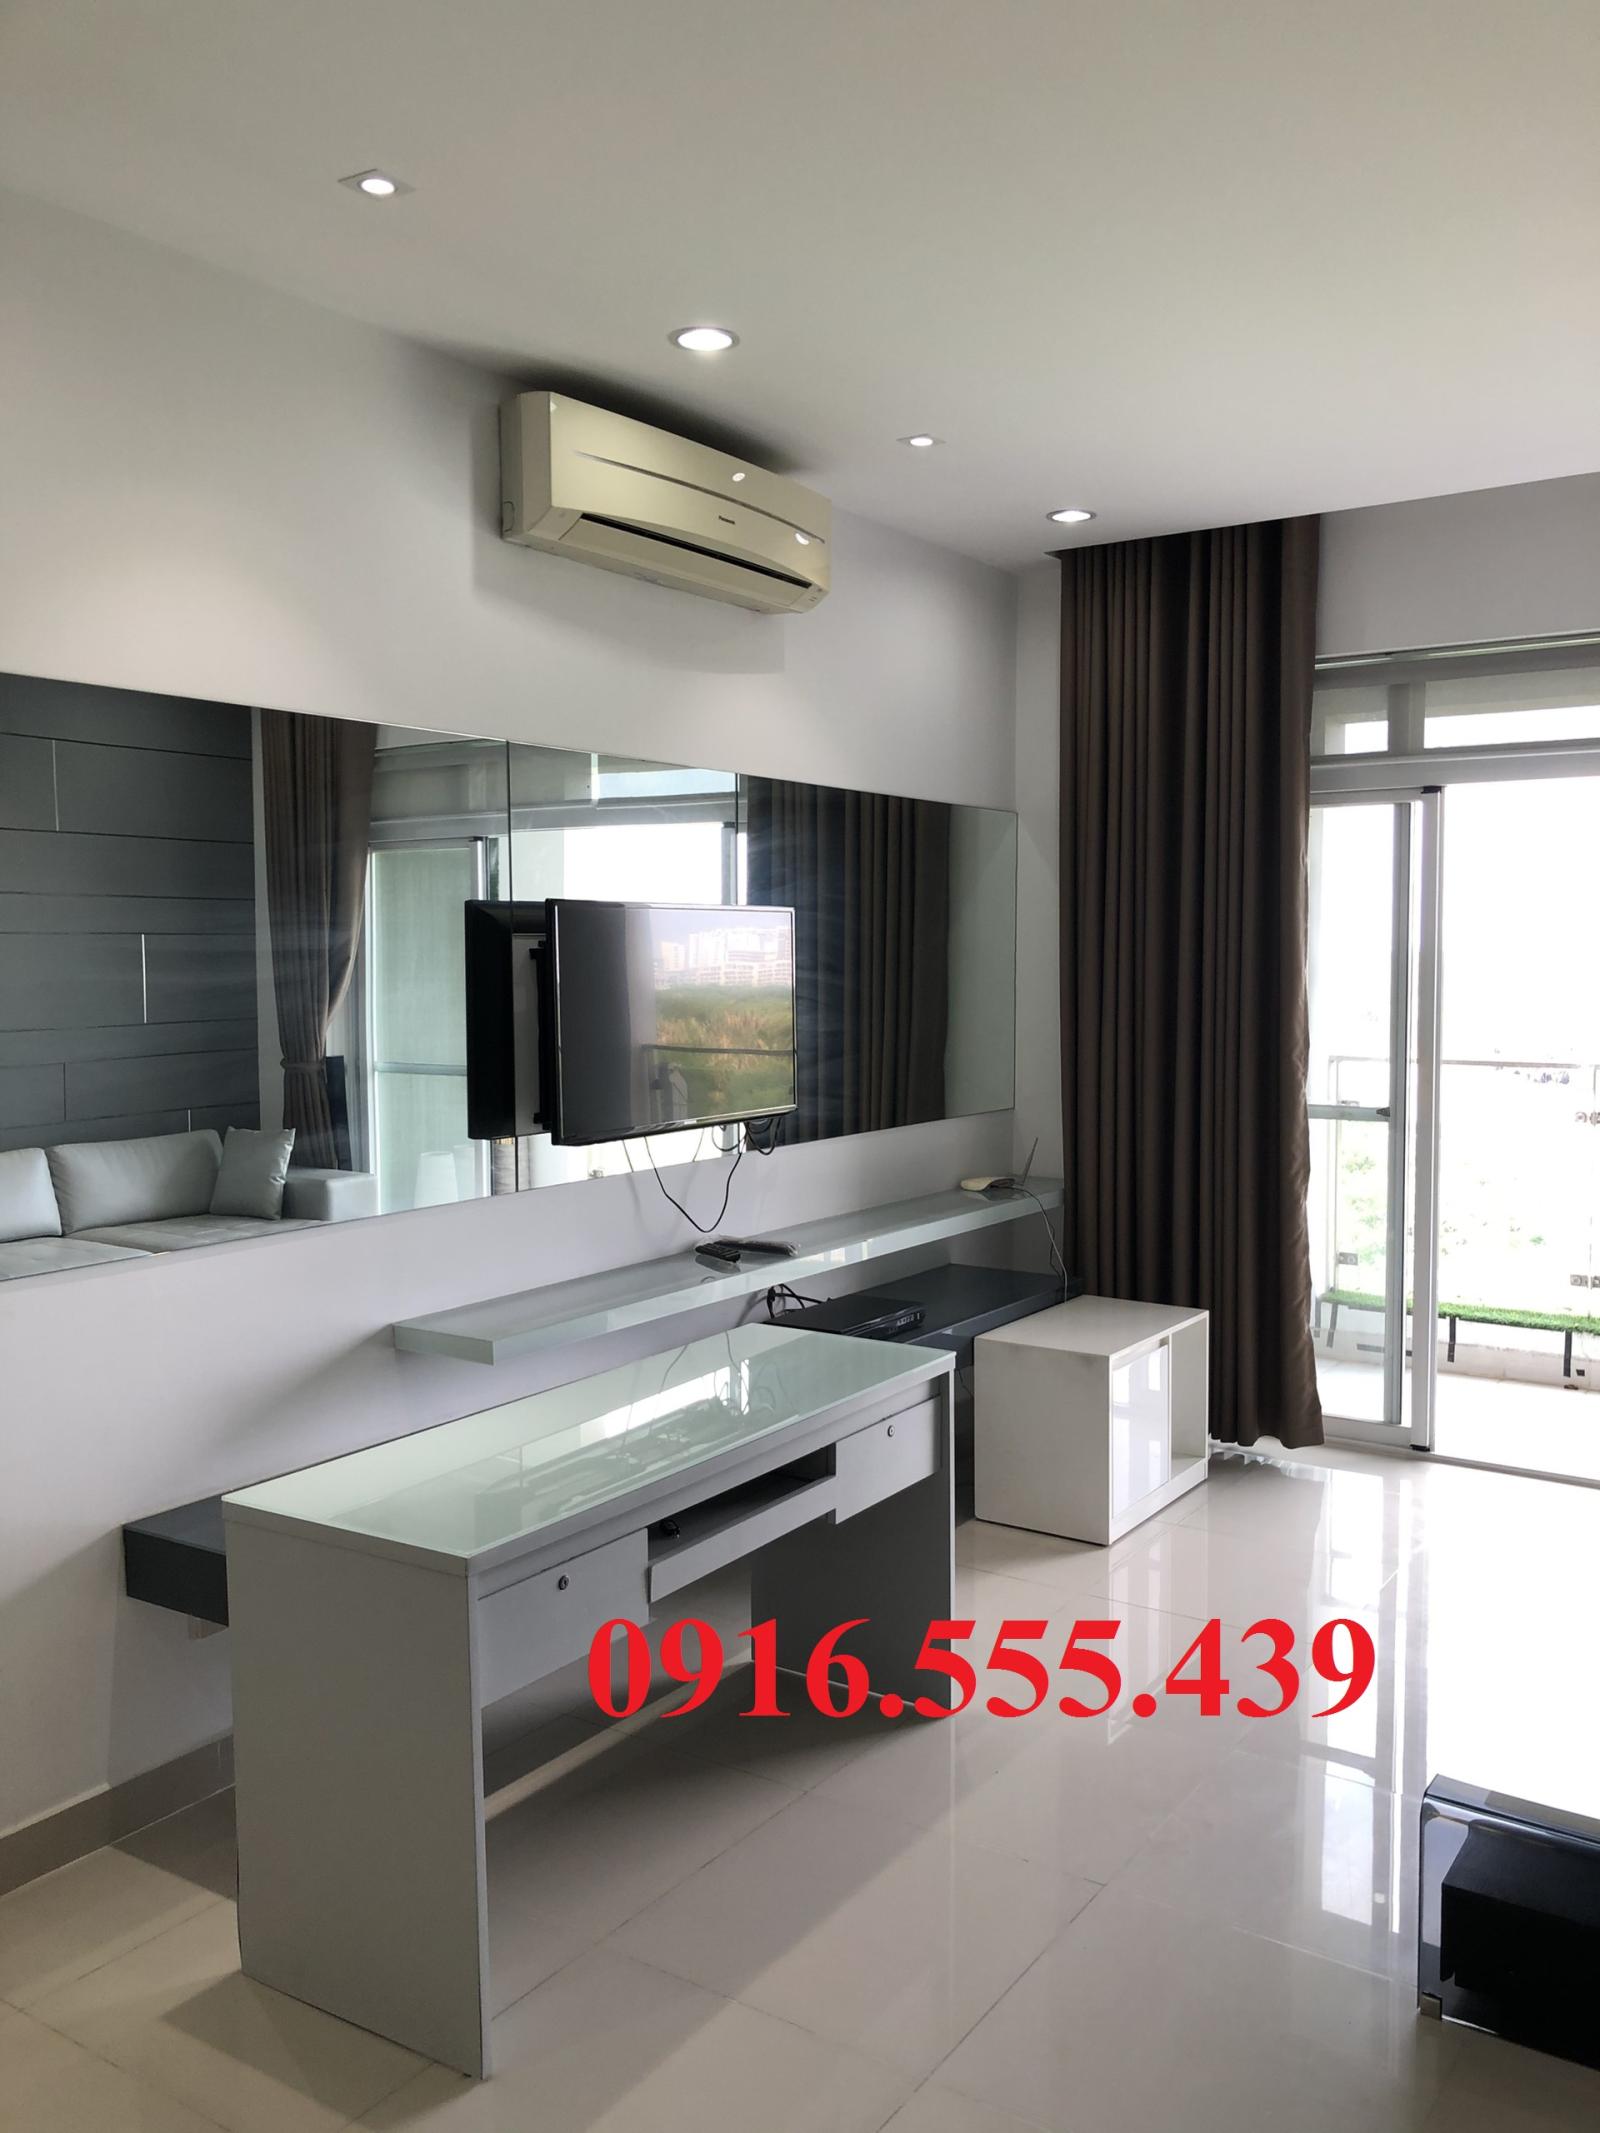 Cho thuê căn hộ Riverside Phú Mỹ Hưng, 135m2, 3PN, giá 26 triệu/tháng. LH 0916.555.439